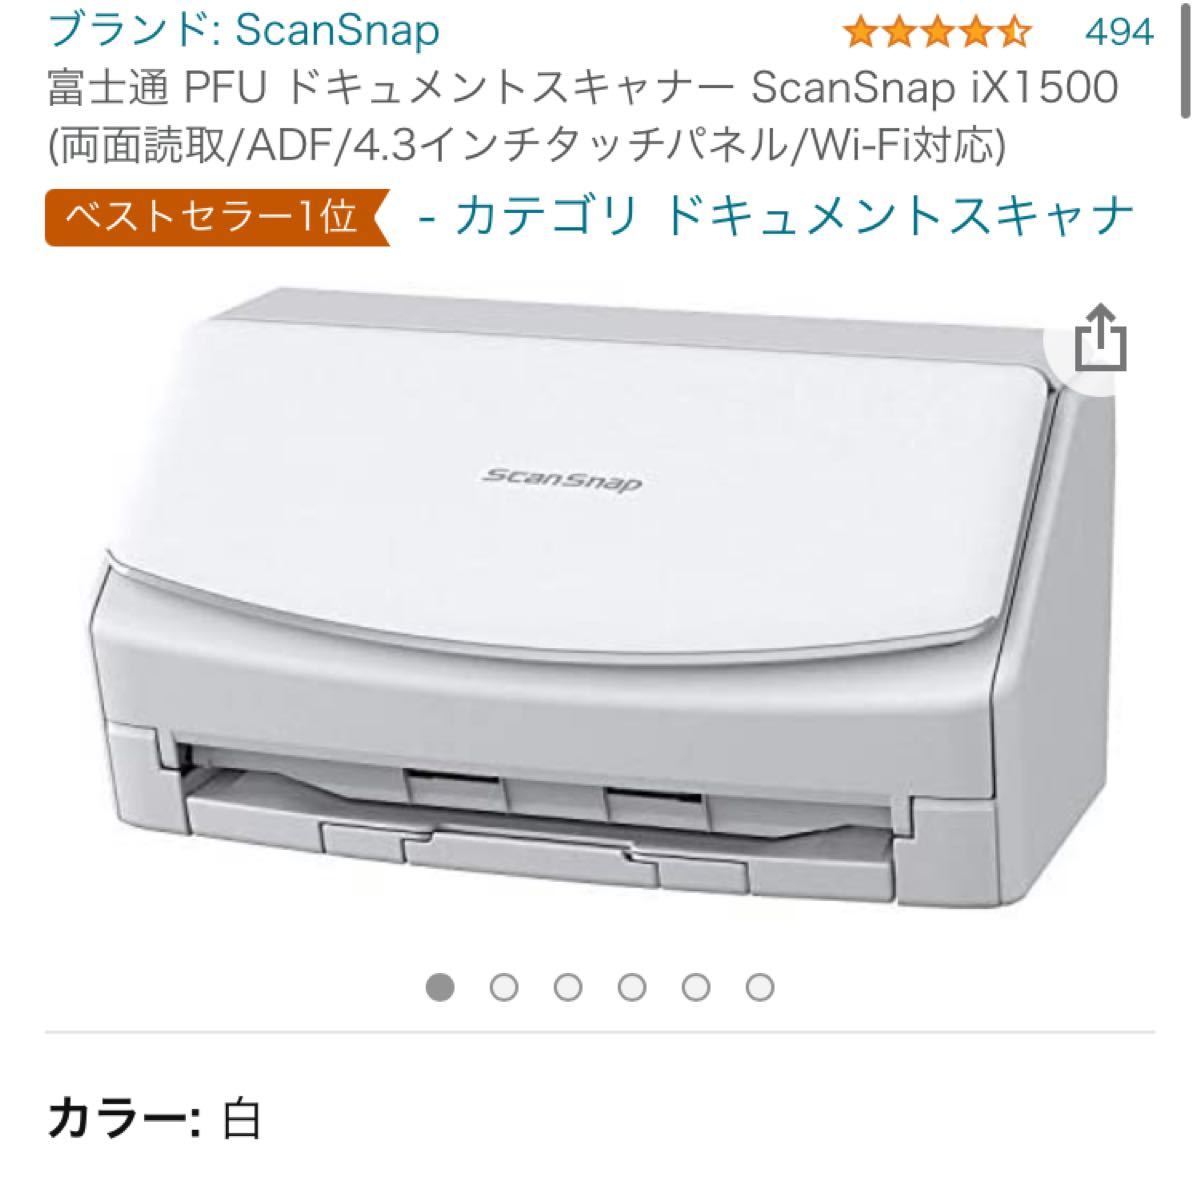 富士通 ScanSnap iX1500 (両面読取/ADF/4.3インチタッチパネル/Wi-Fi対応)